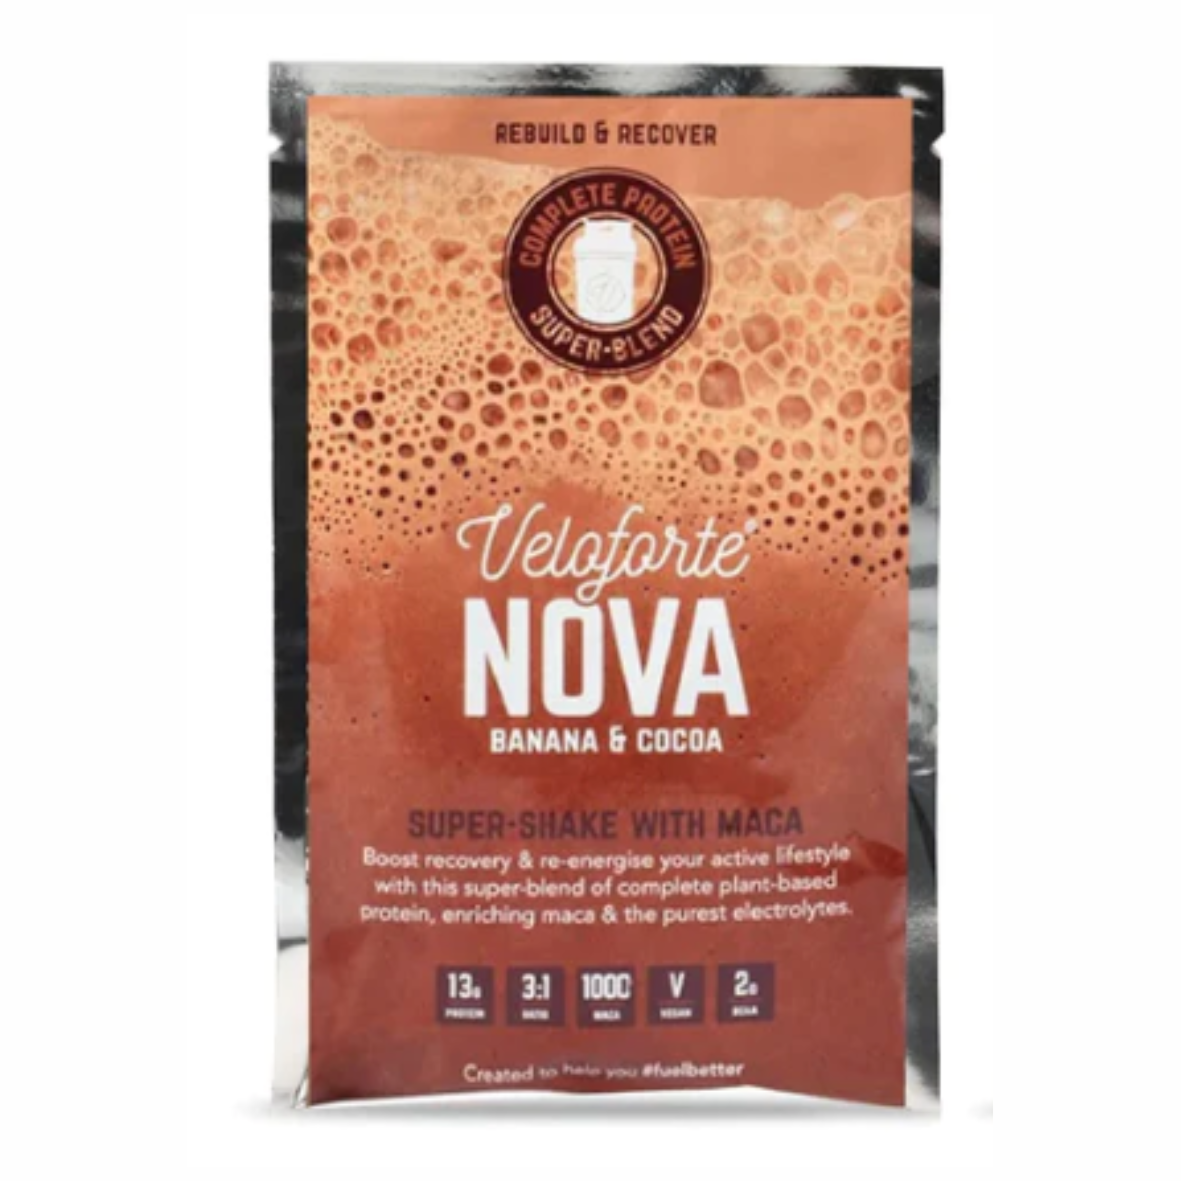 Veloforte - Nova (Banana & Cocoa) Protein Shake (67g)